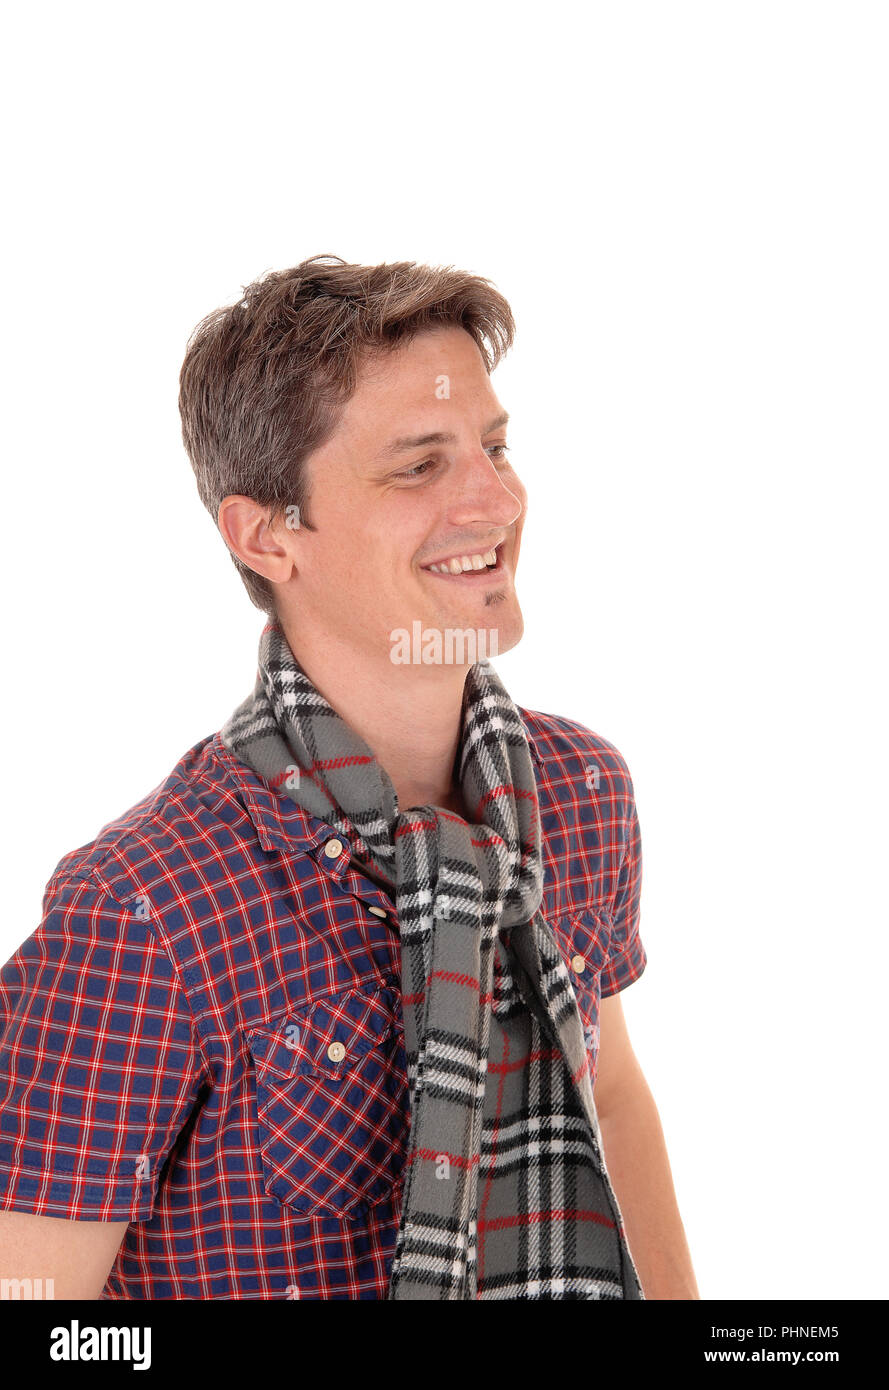 Feliz joven en una imagen retrato sonriente Foto de stock